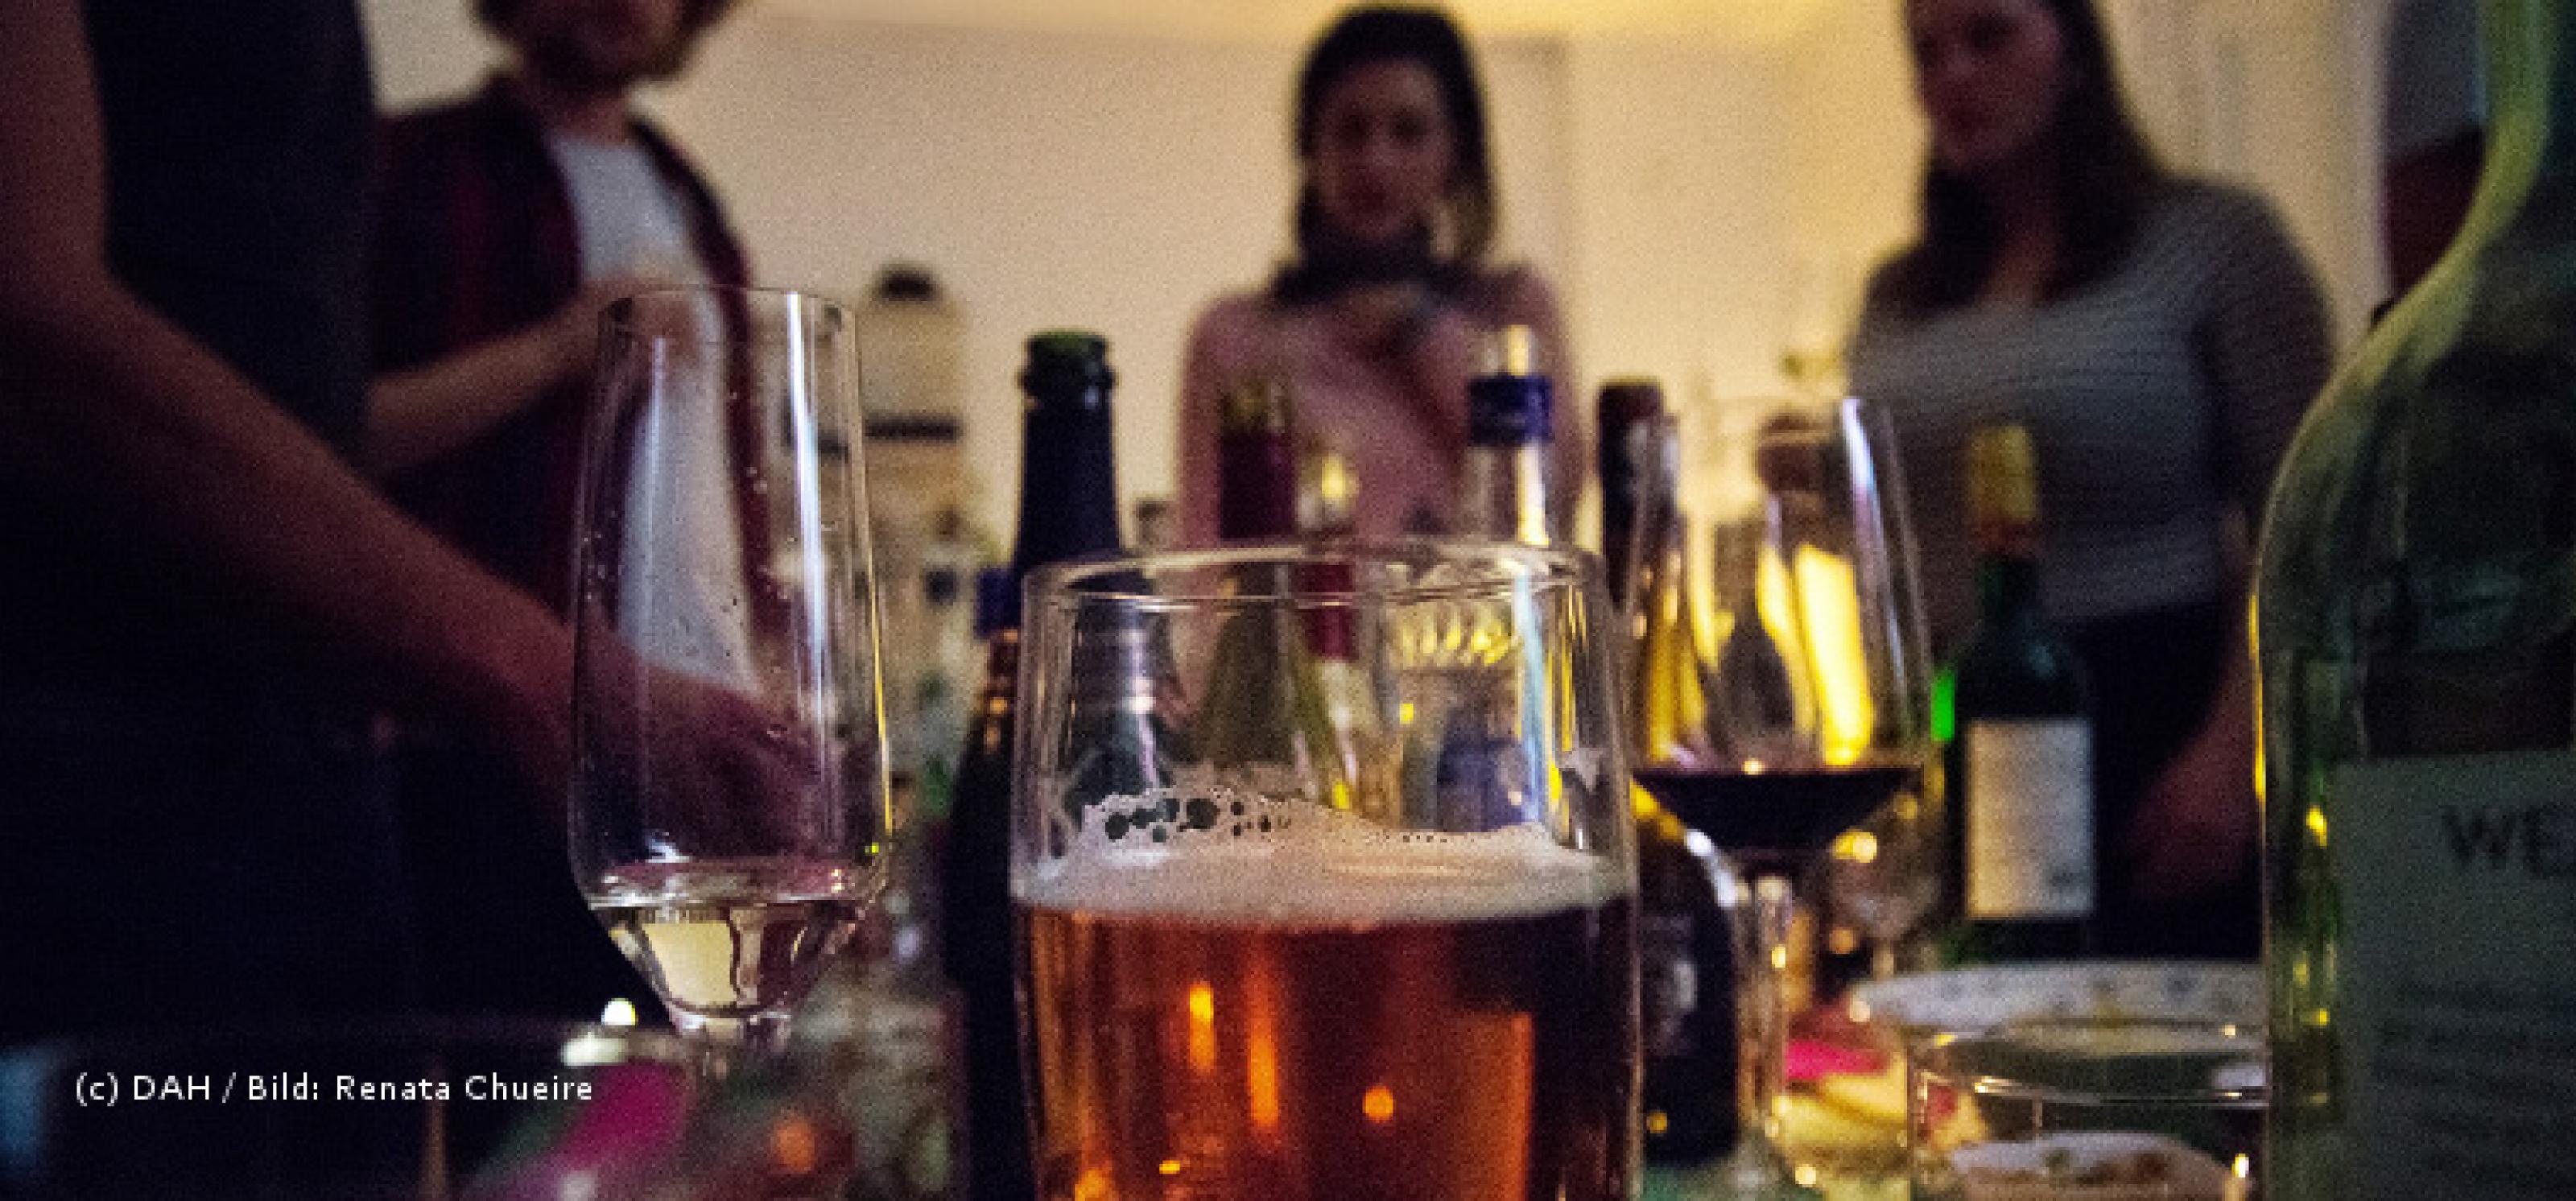 Blick auf eine Partyszene, im Vodergrund stehen mehrere alkoholische Getränke, im Hintergrund die Silhouetten von einigen Menschen